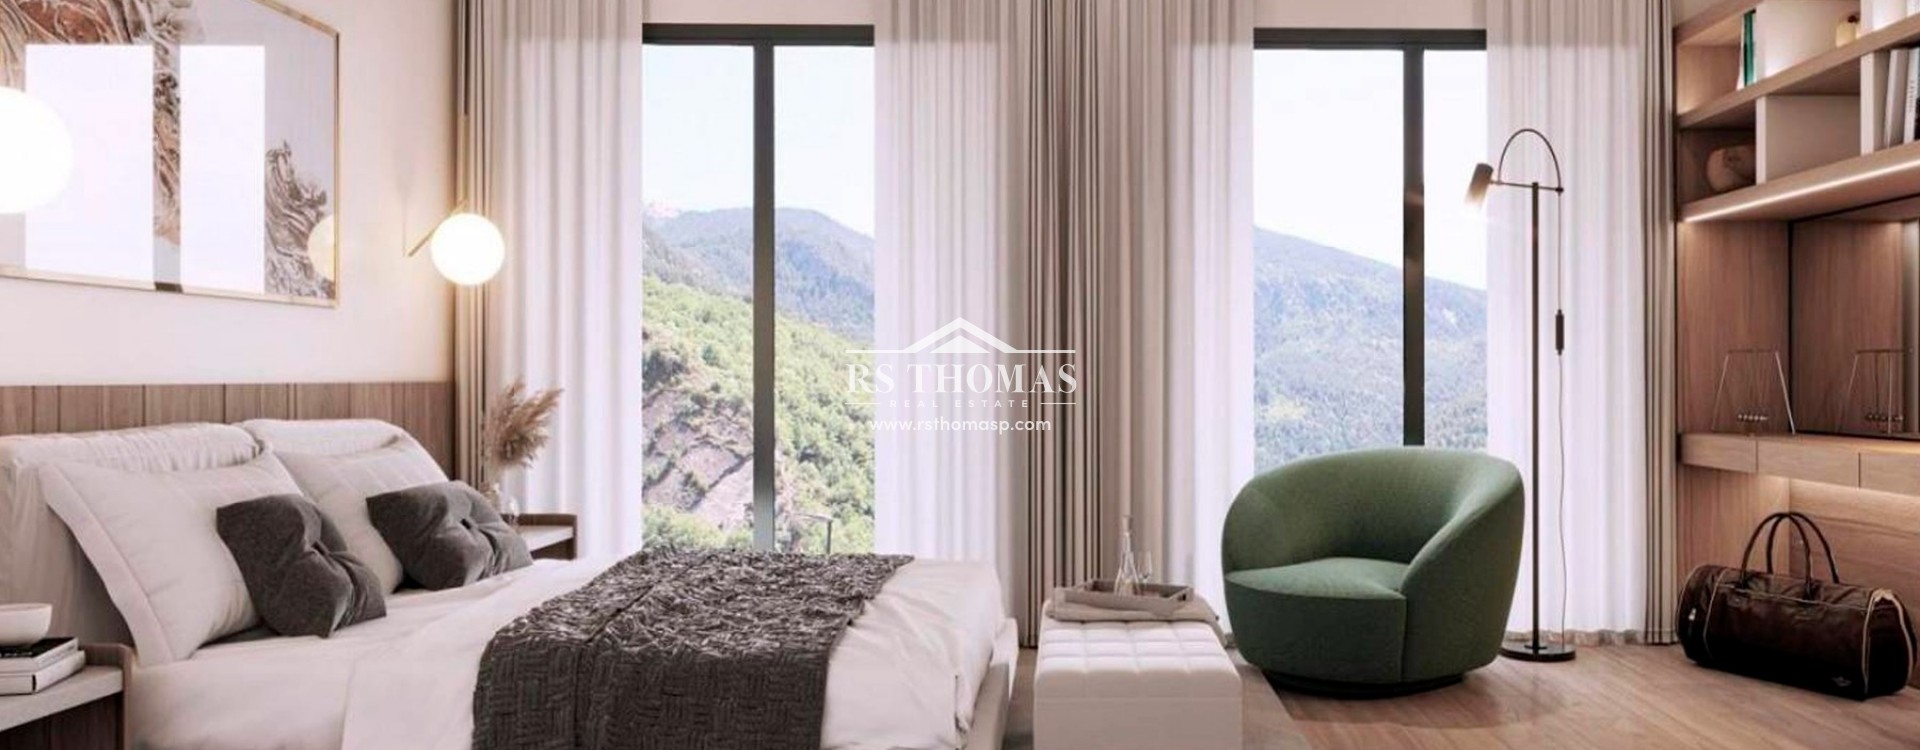 Appartement de nouvelle promotion à acheter à Andorre-la-Vieille